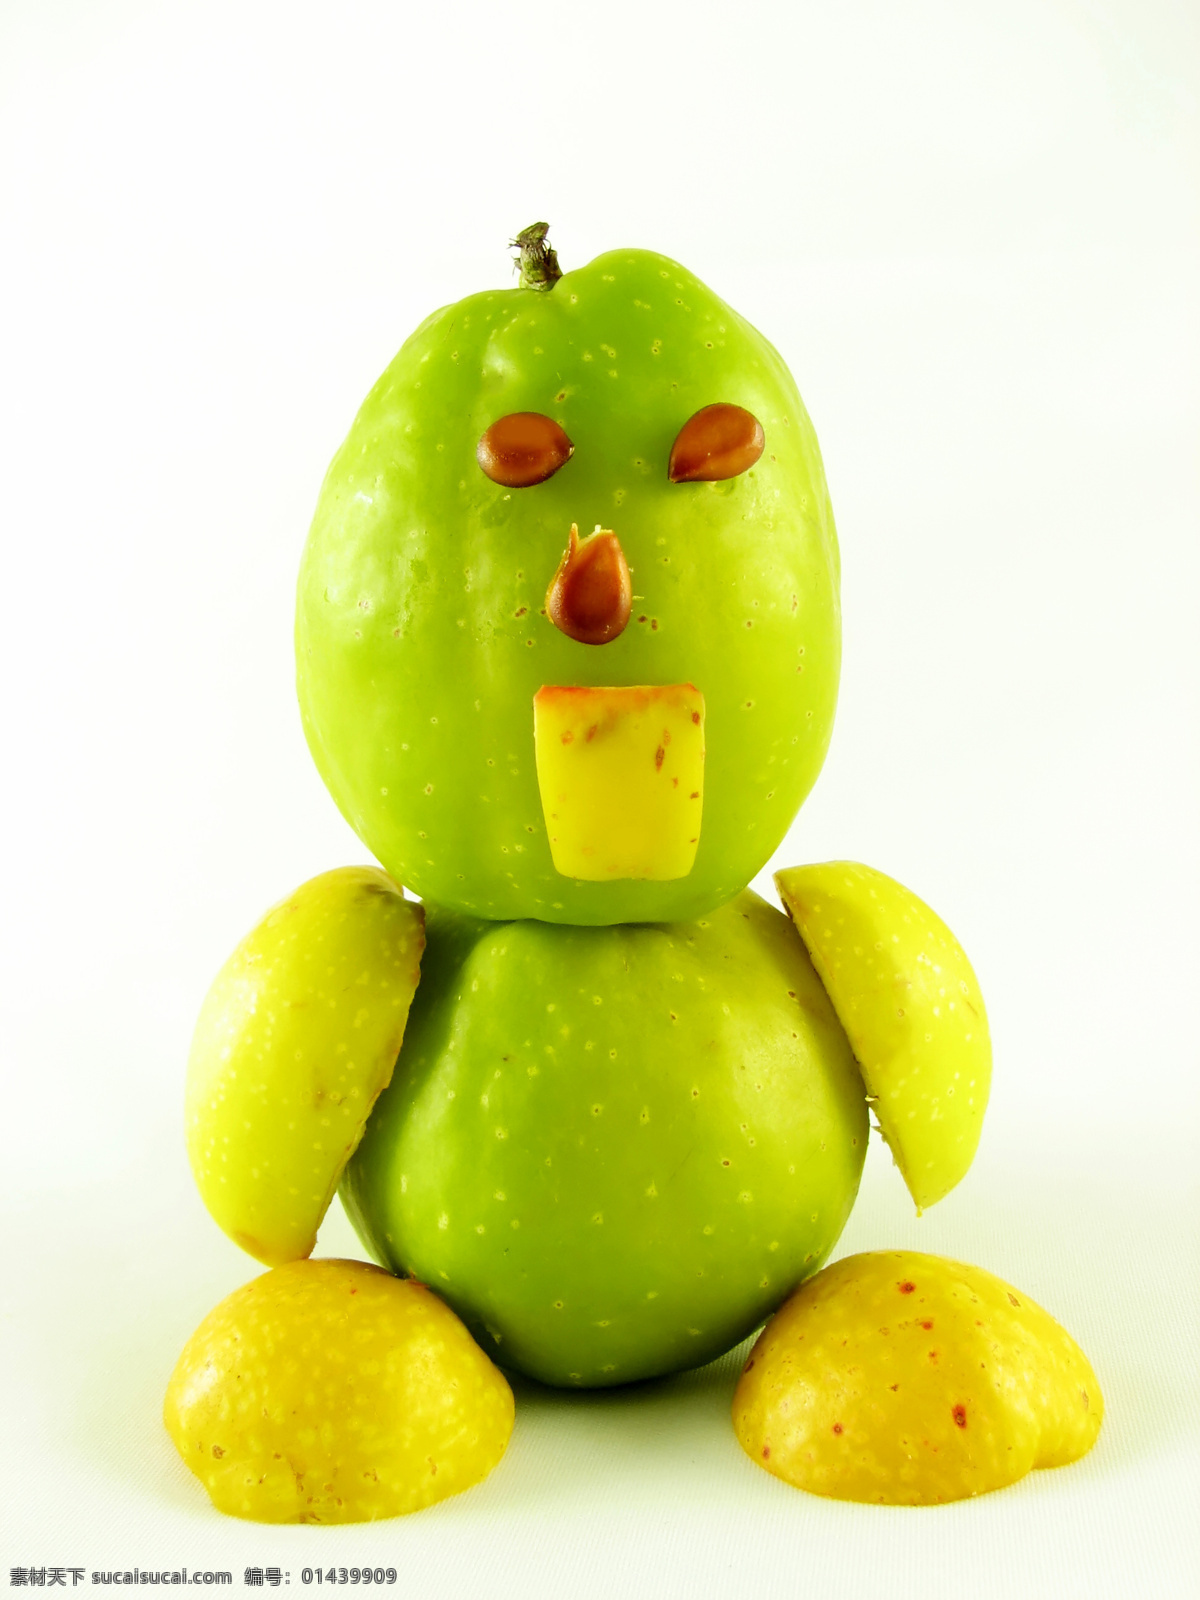 橙子 创意 广告 卡通人物 苹果 生物世界 水果 摄影图片 广告摄影 鸭梨